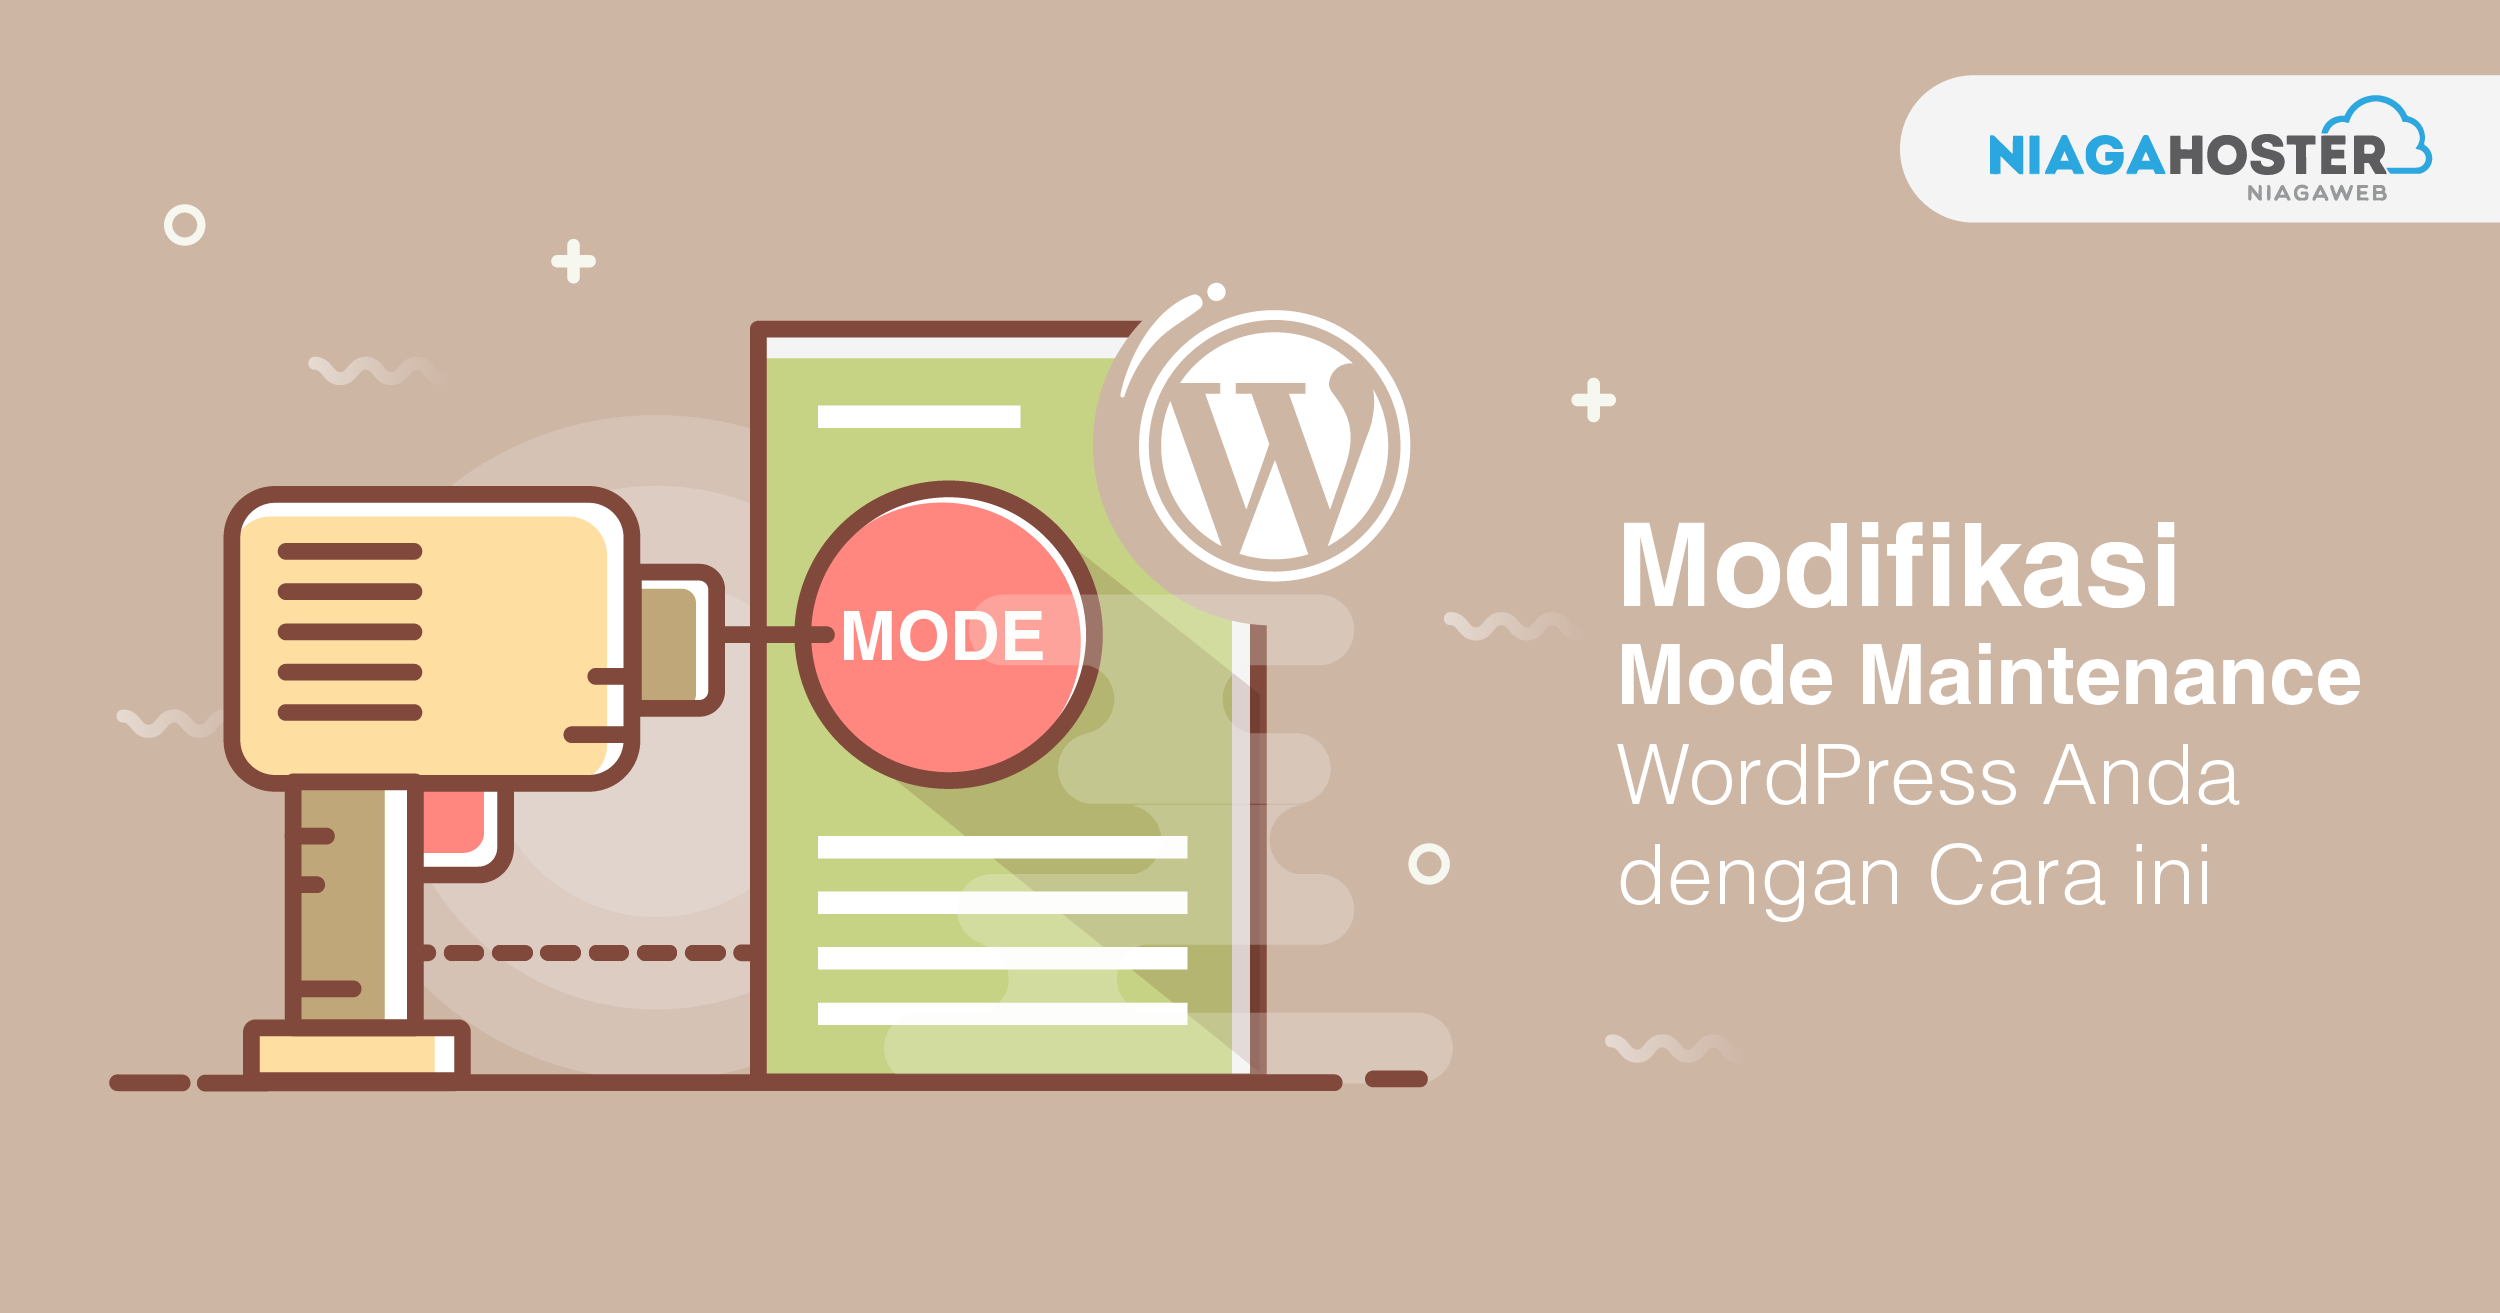 Modifikasi Mode Maintenance WordPress Anda dengan Cara ini